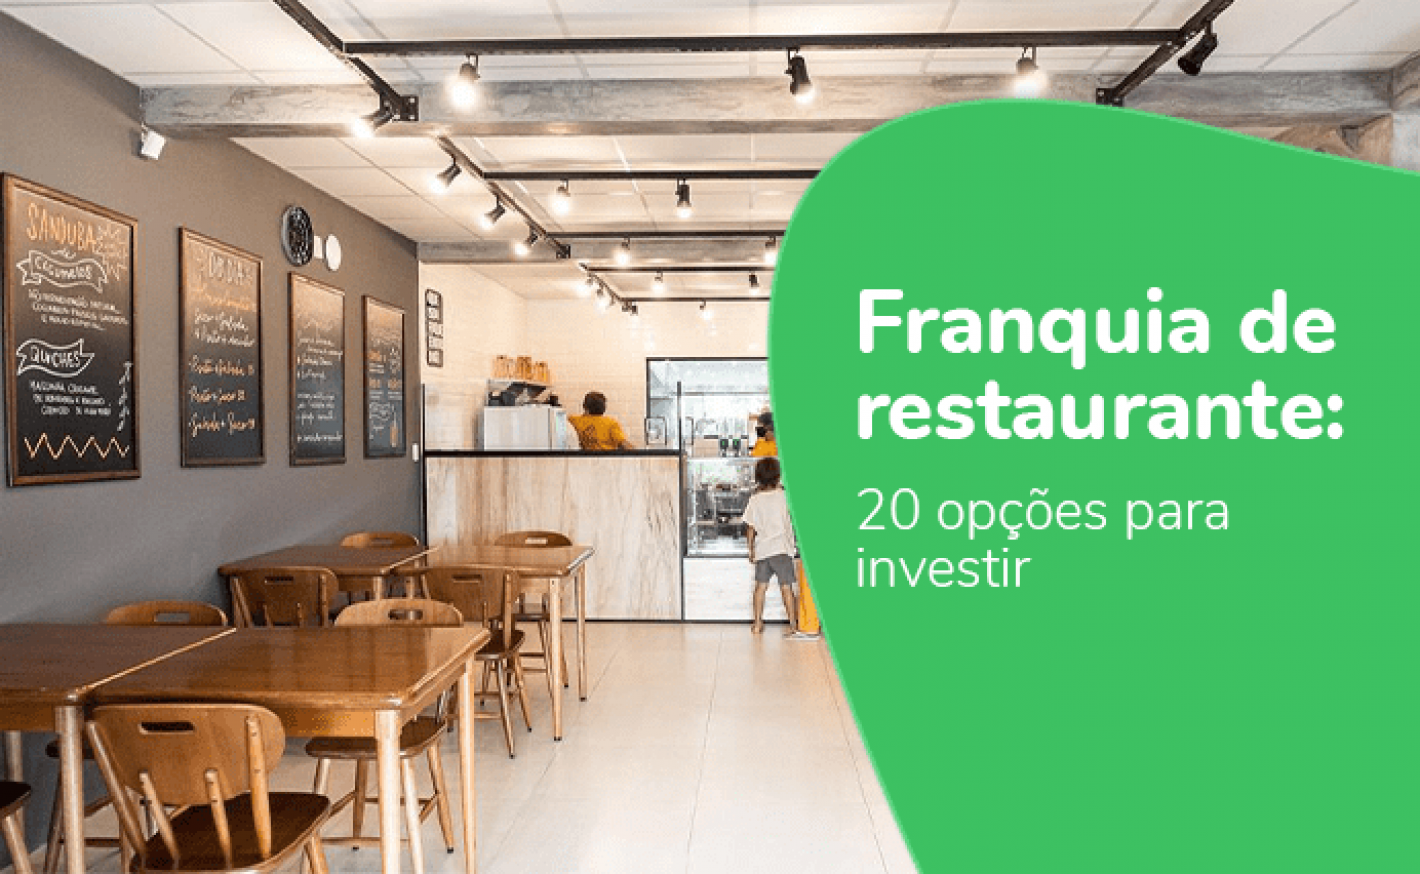 Franquia de restaurante: 20 opções para investir!